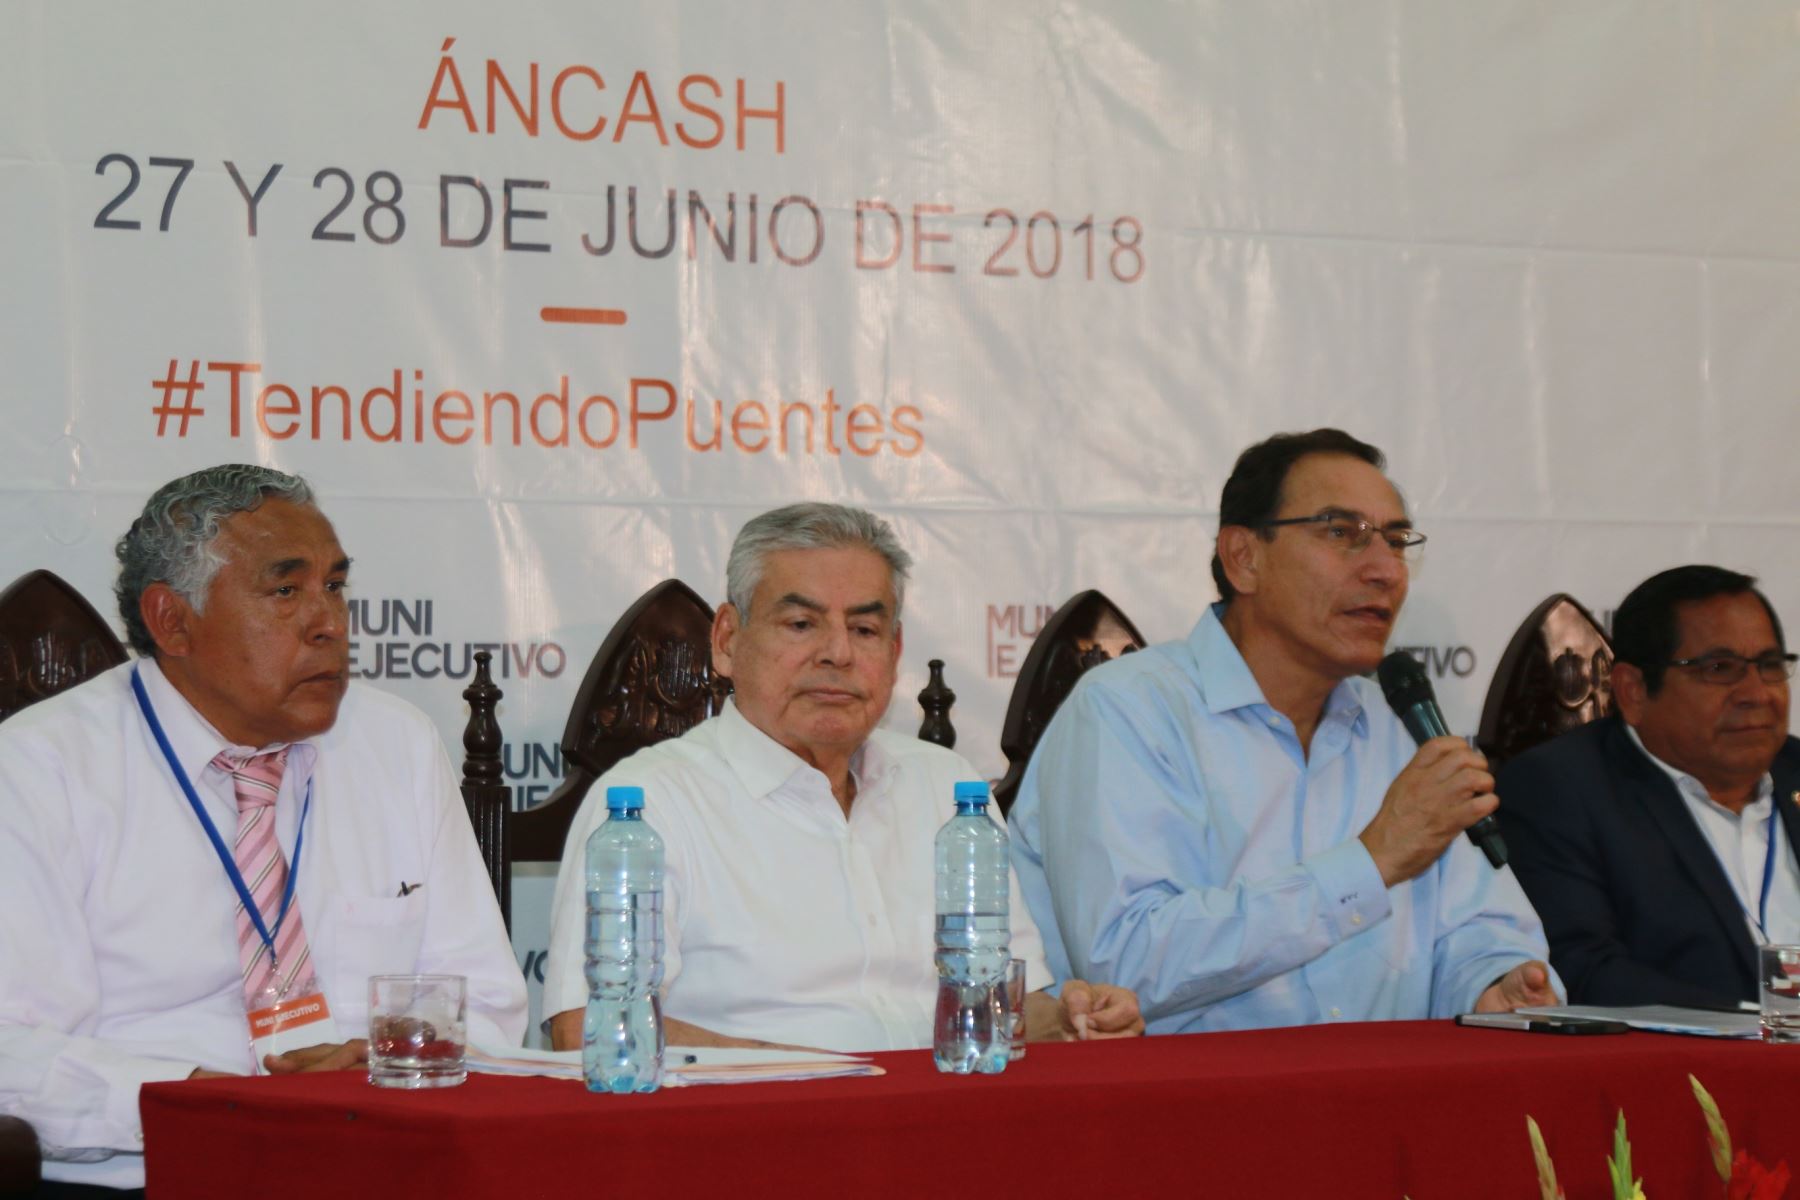 Presidente Martín Vizcarra encabezó el Muni Ejecutivo que se desarrolló en la ciudad de Chimbote, en Áncash. ANDINA